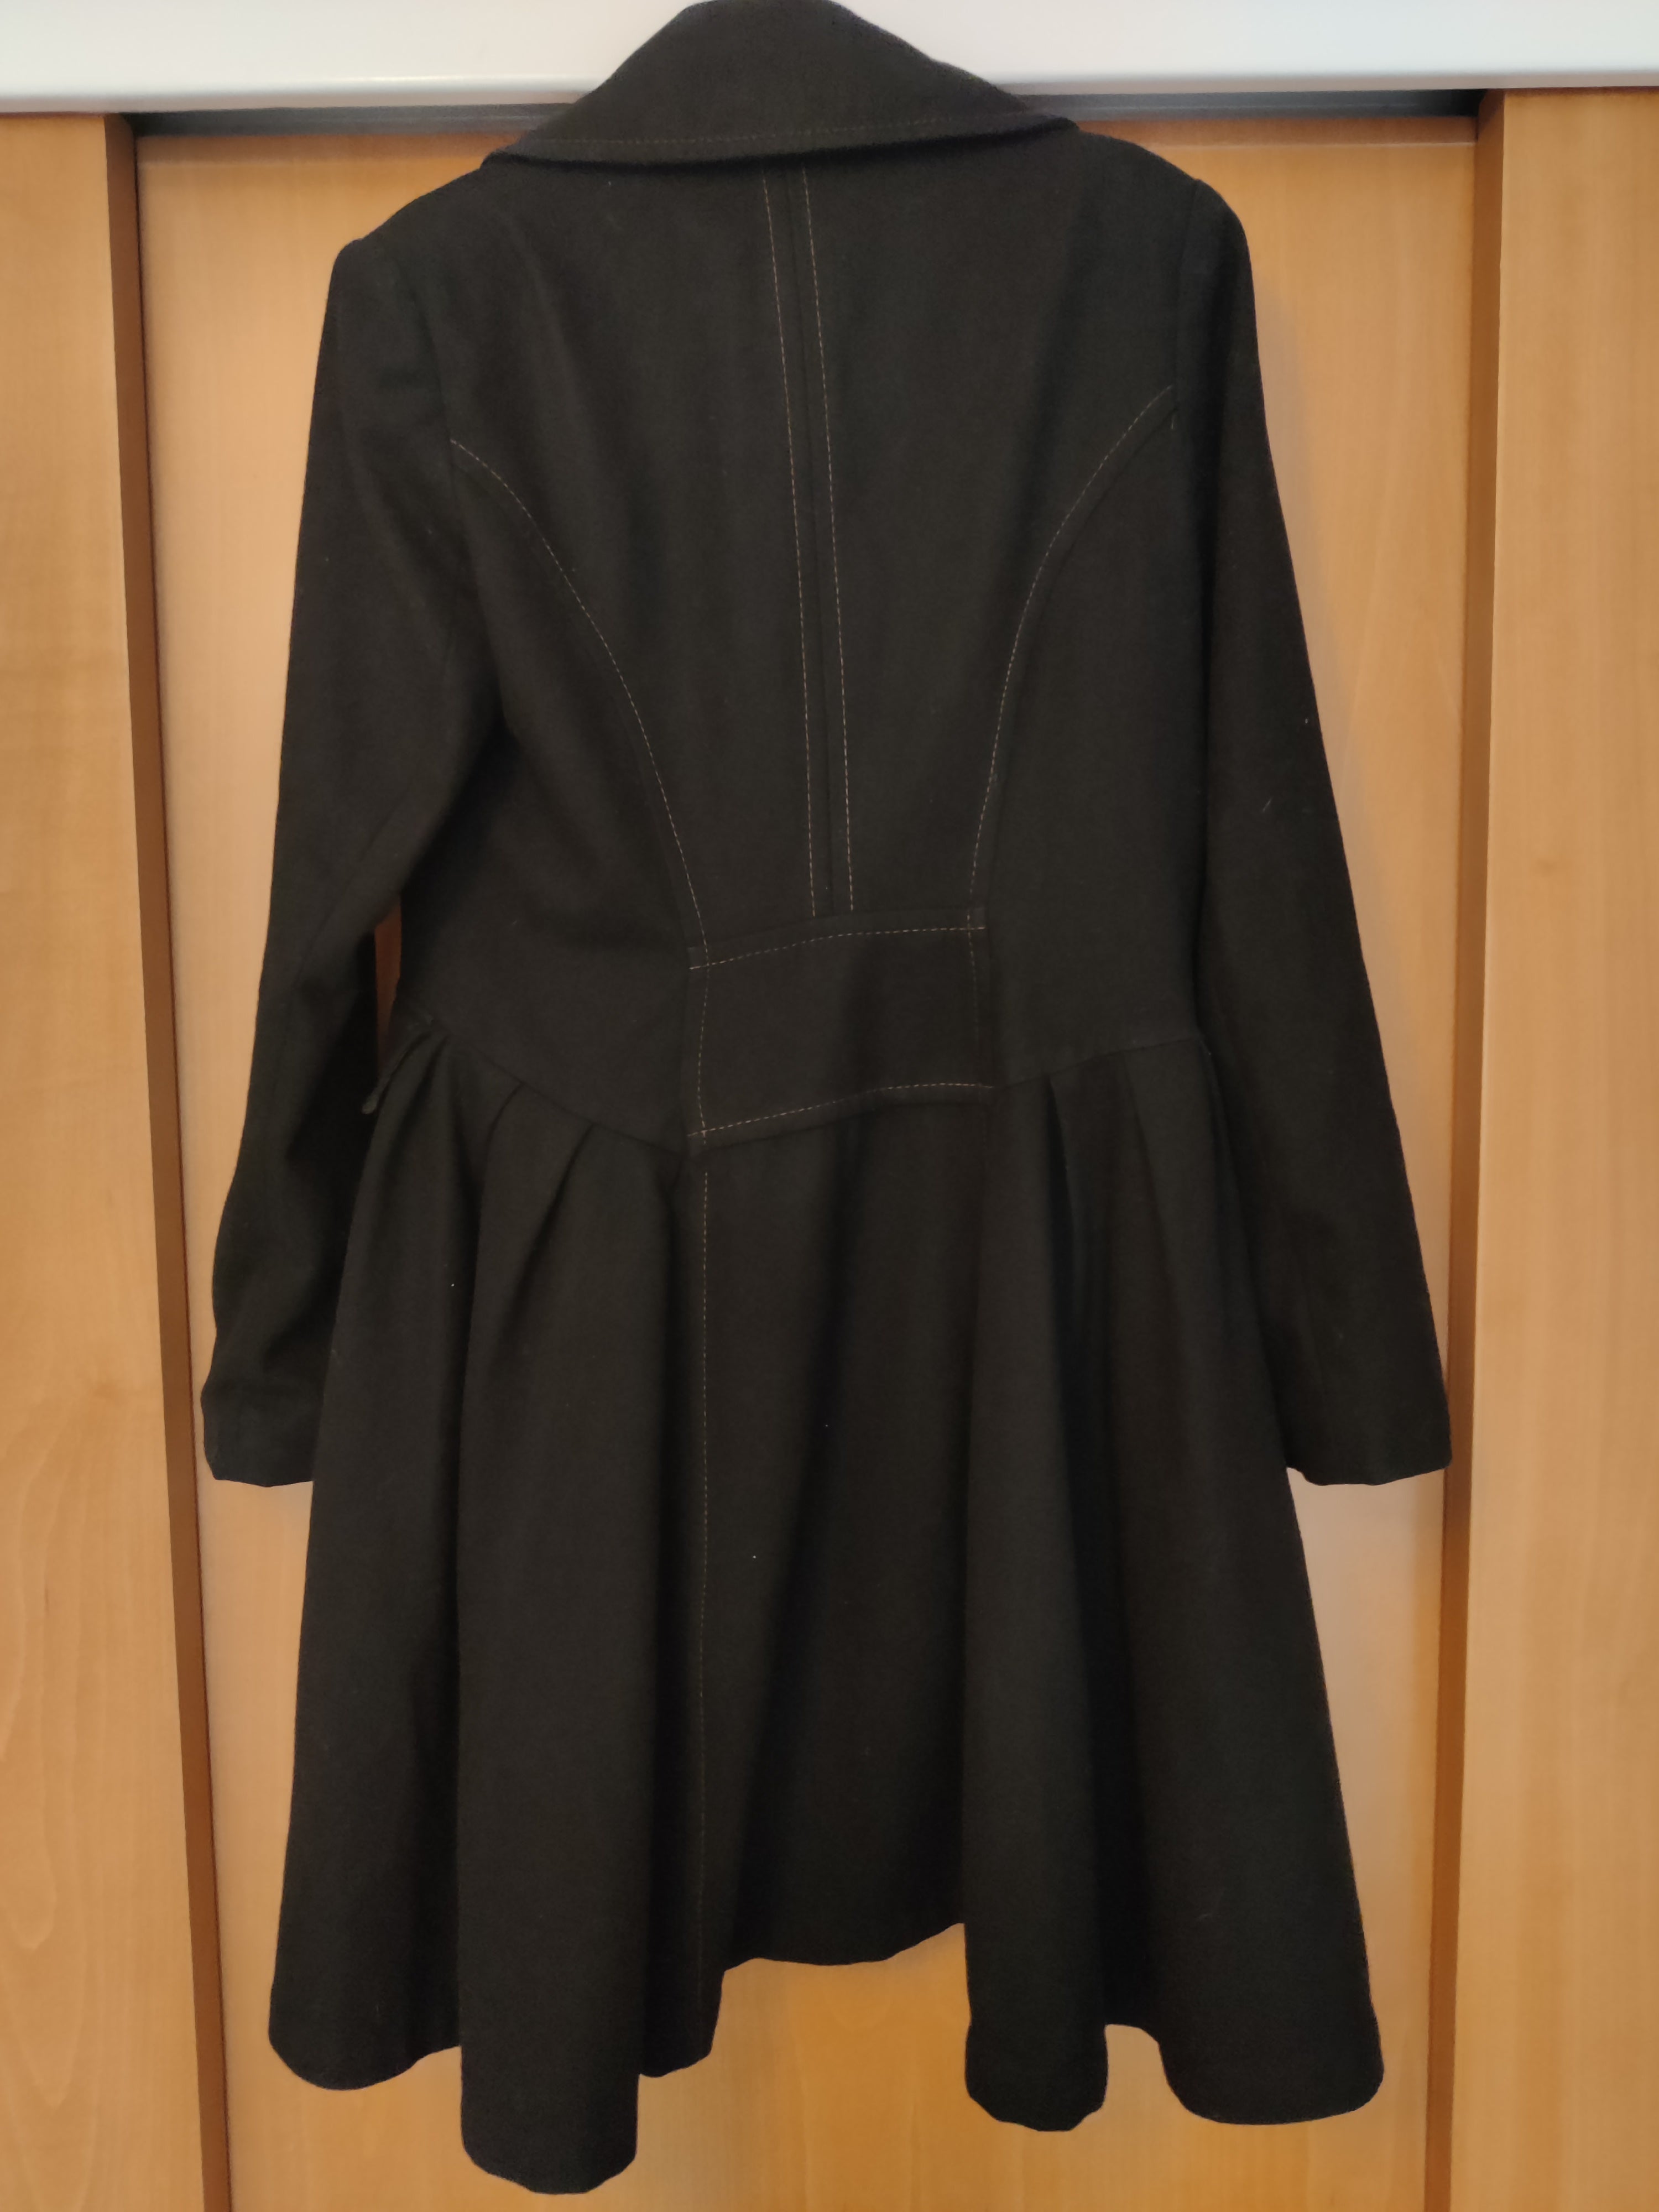 Preloved Black frock coat